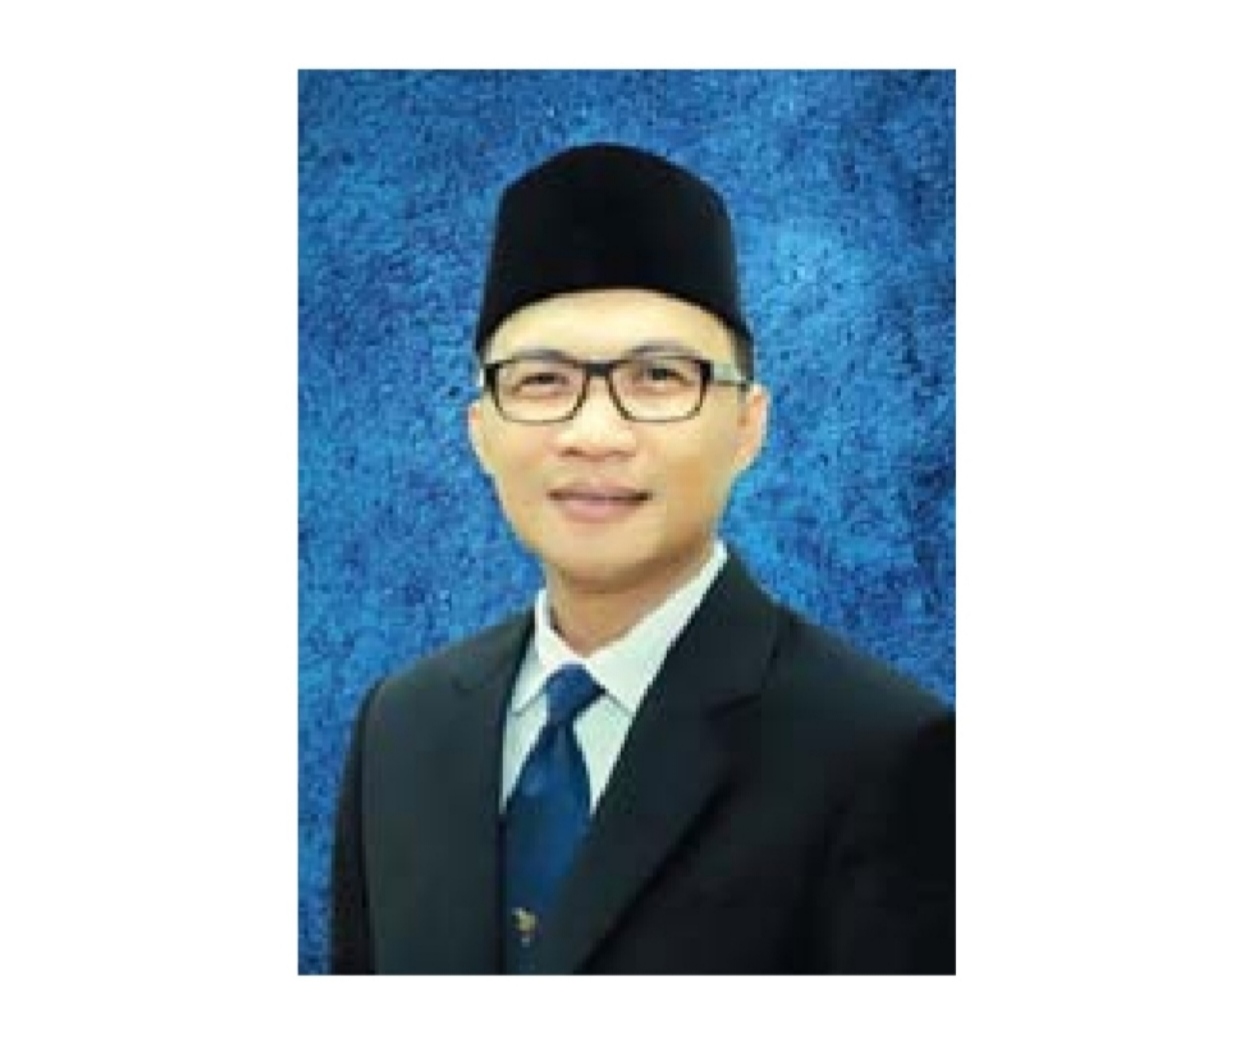 Tim Fakultas Hukum Unila Selesaikan Riset Aplikasi Omni Law sebagai Pembantu RUU di Indonesia